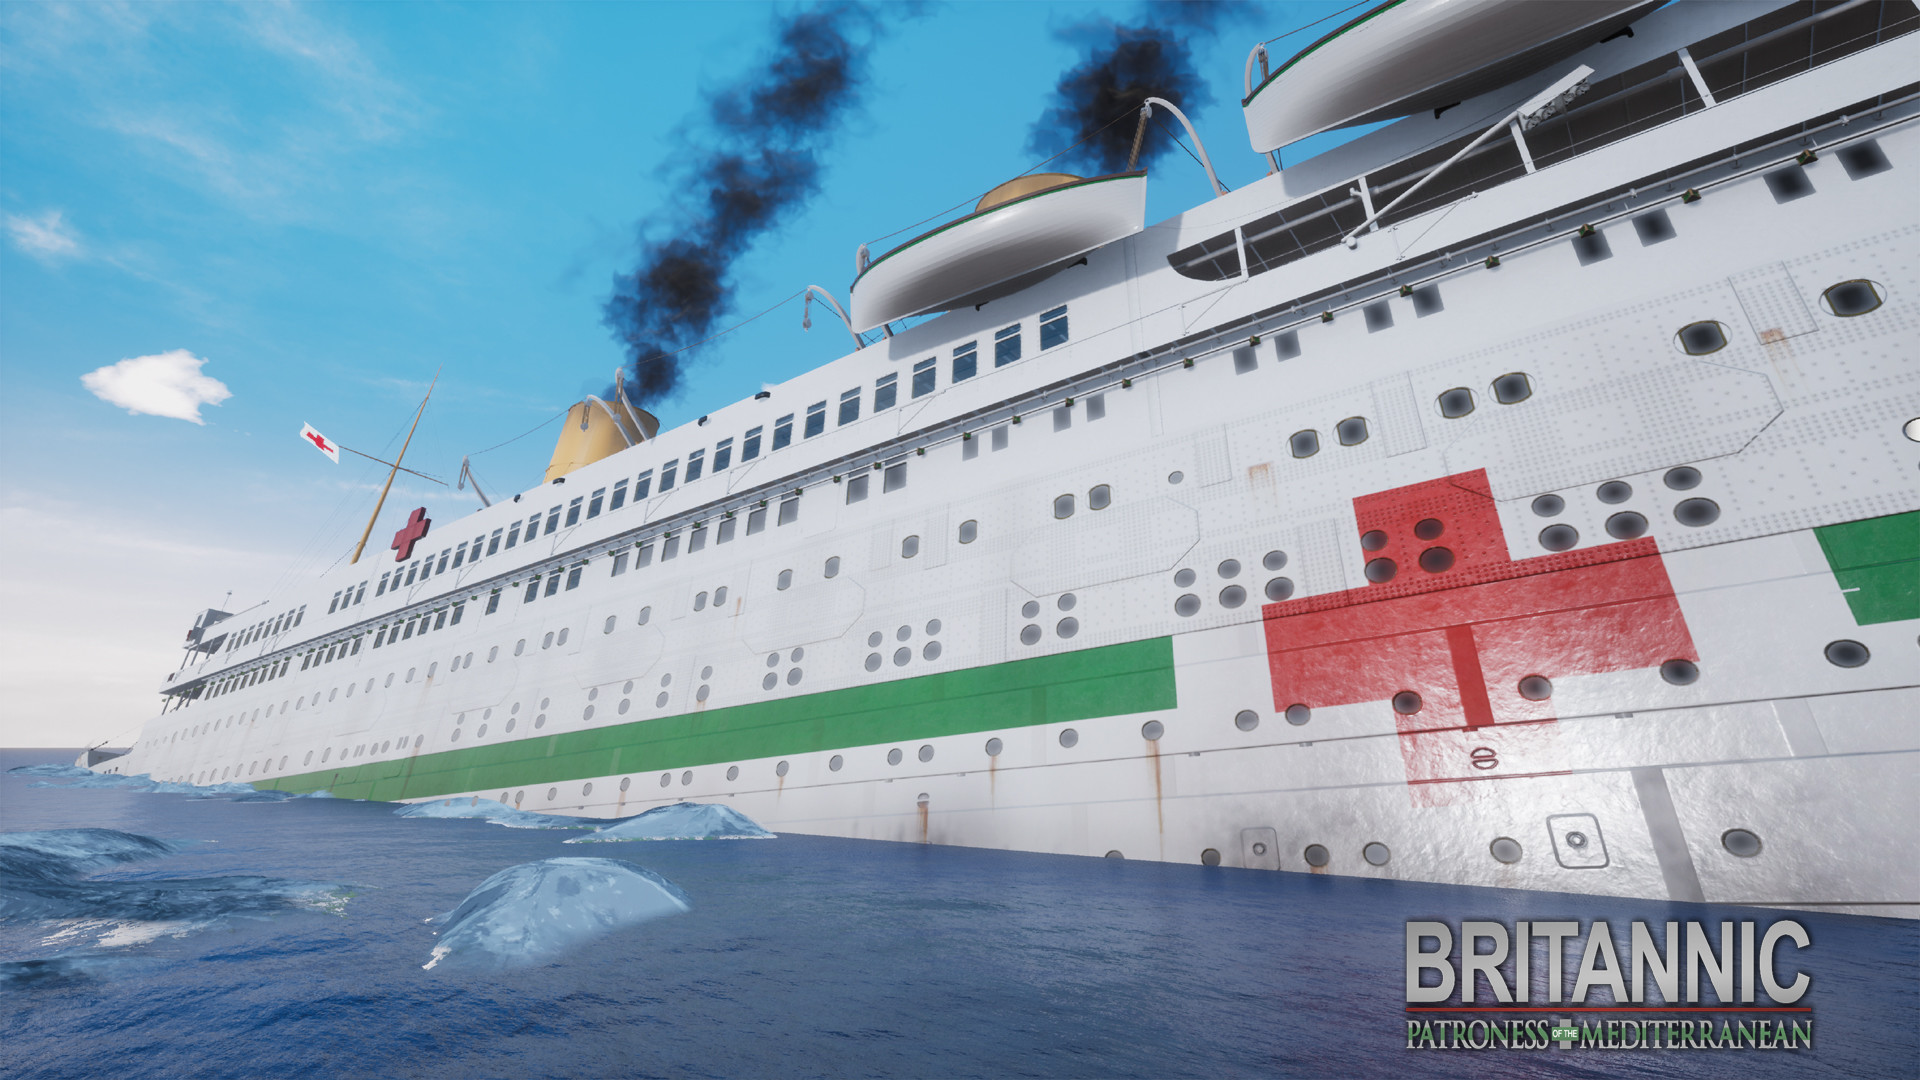 Britannic Patroness Of The Mediterranean On Steam - roblox britannic sinking games free